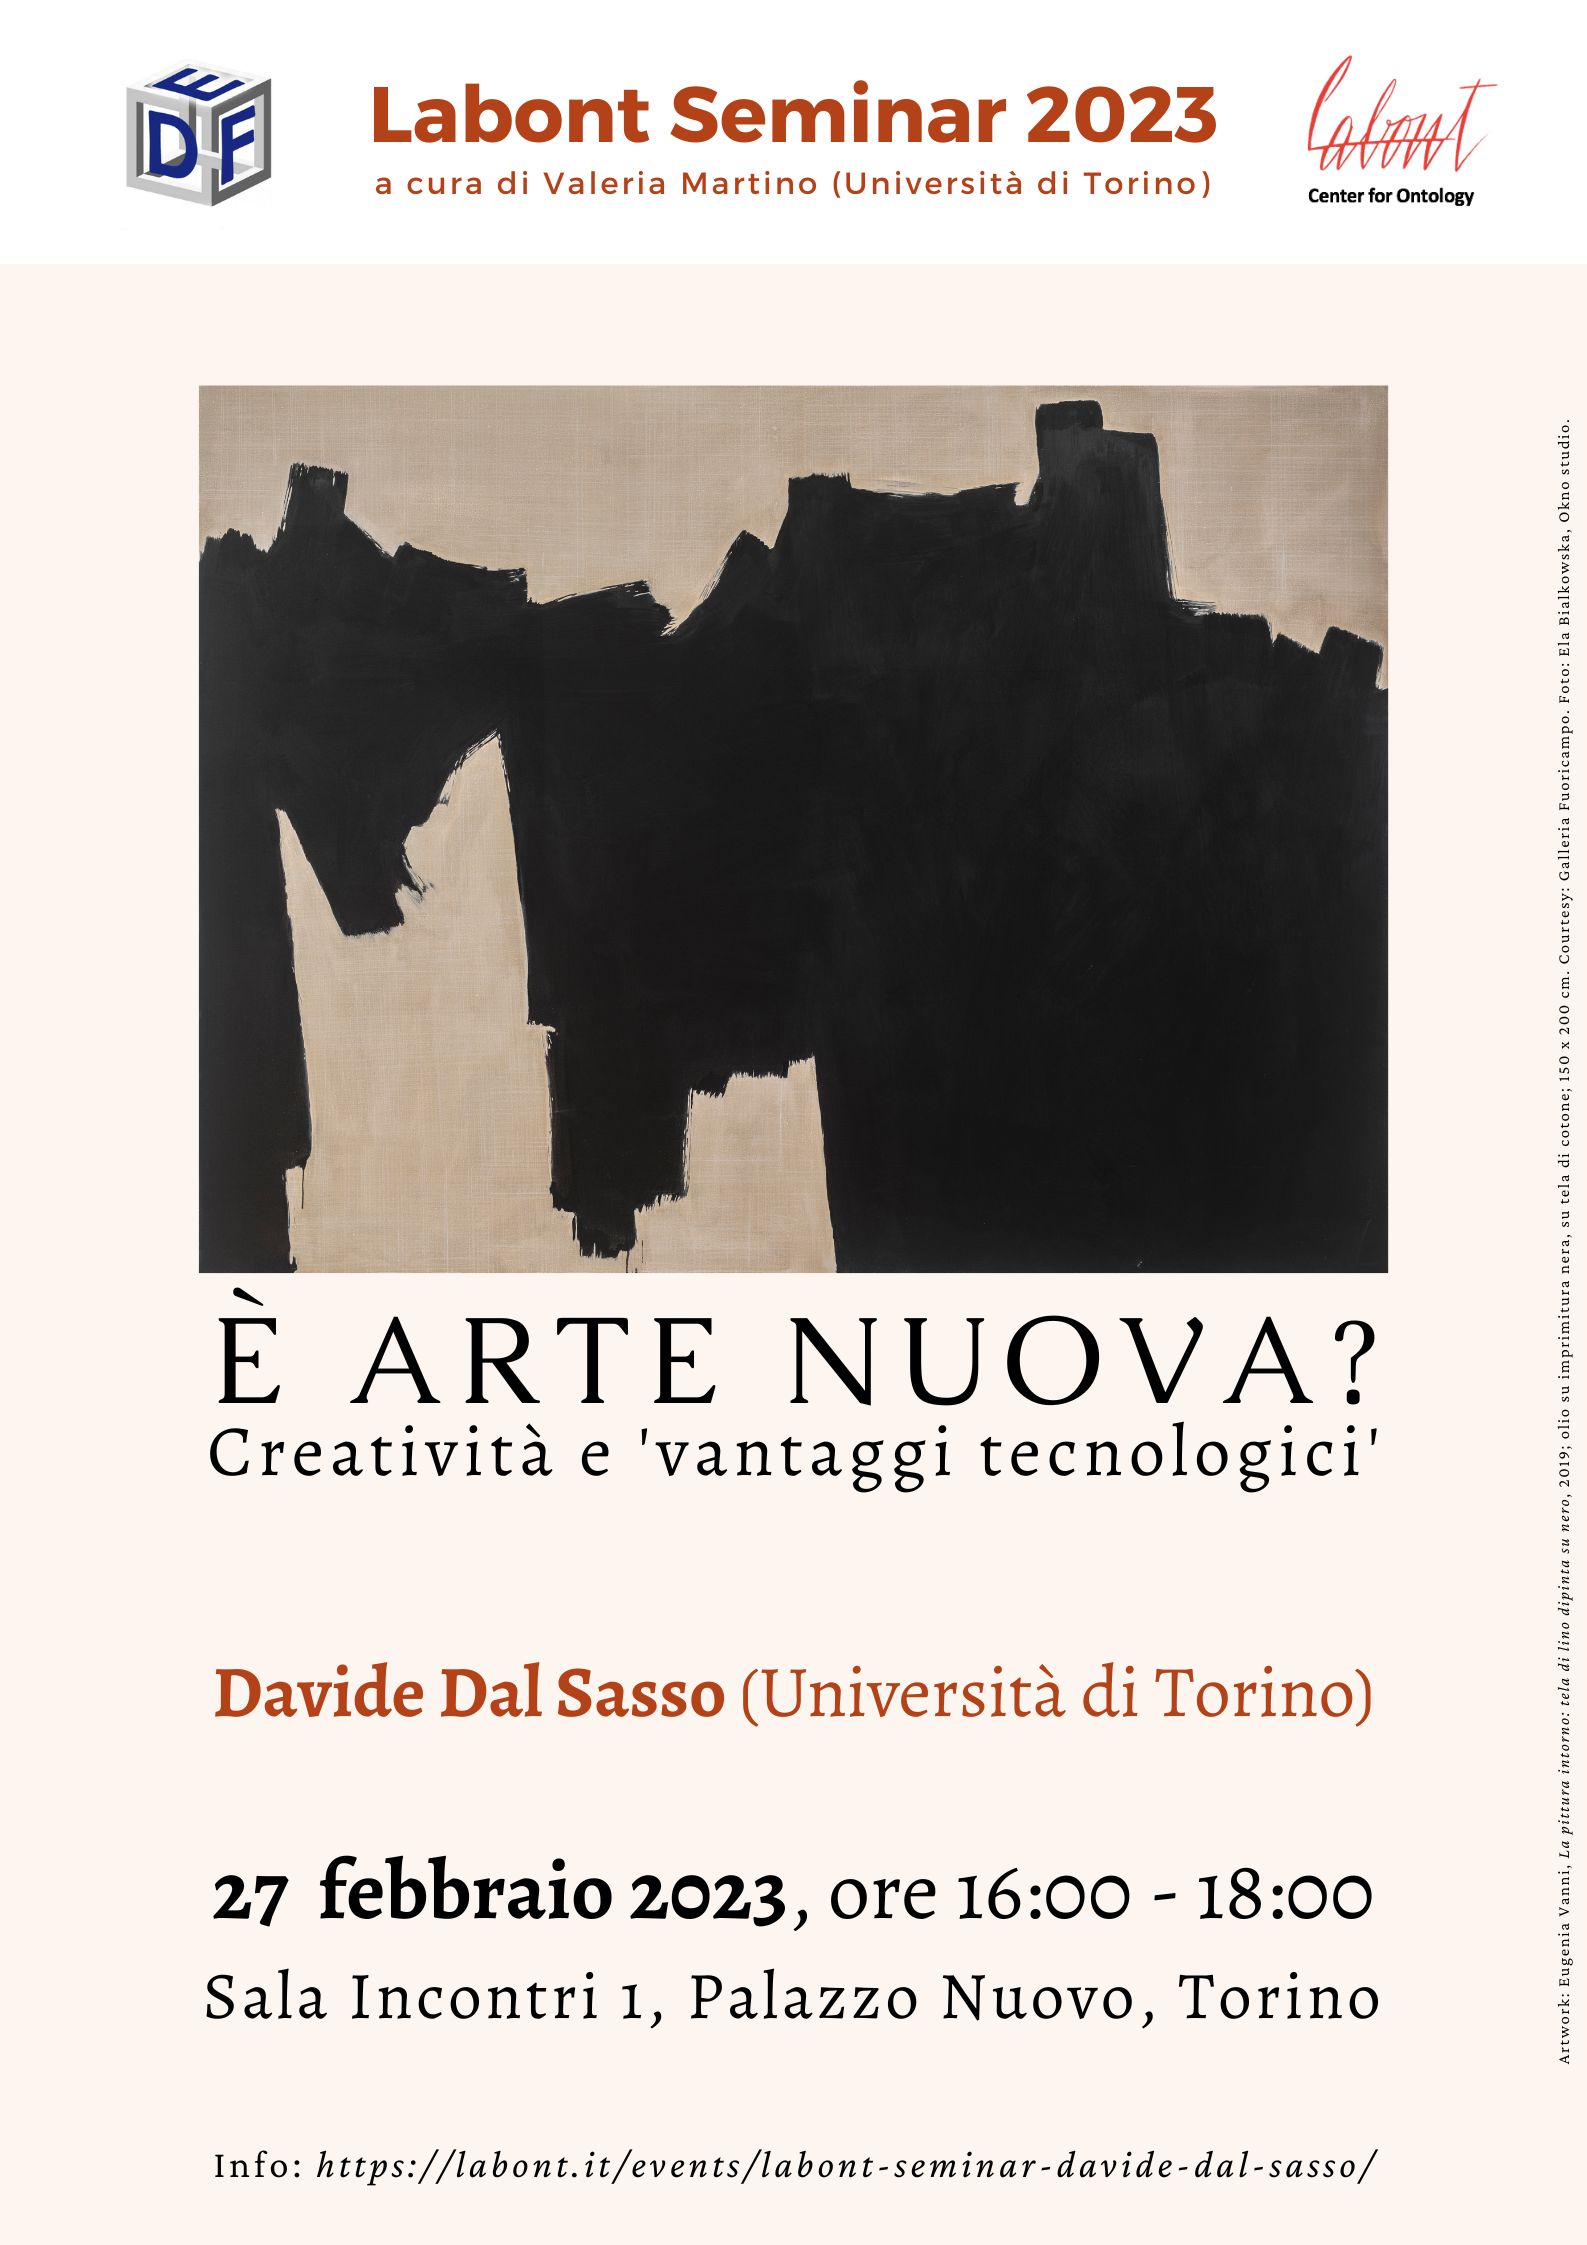 Labont Seminar – Davide Dal Sasso, “È arte nuova? Creatività e ‘vantaggi tecnologici’” - 